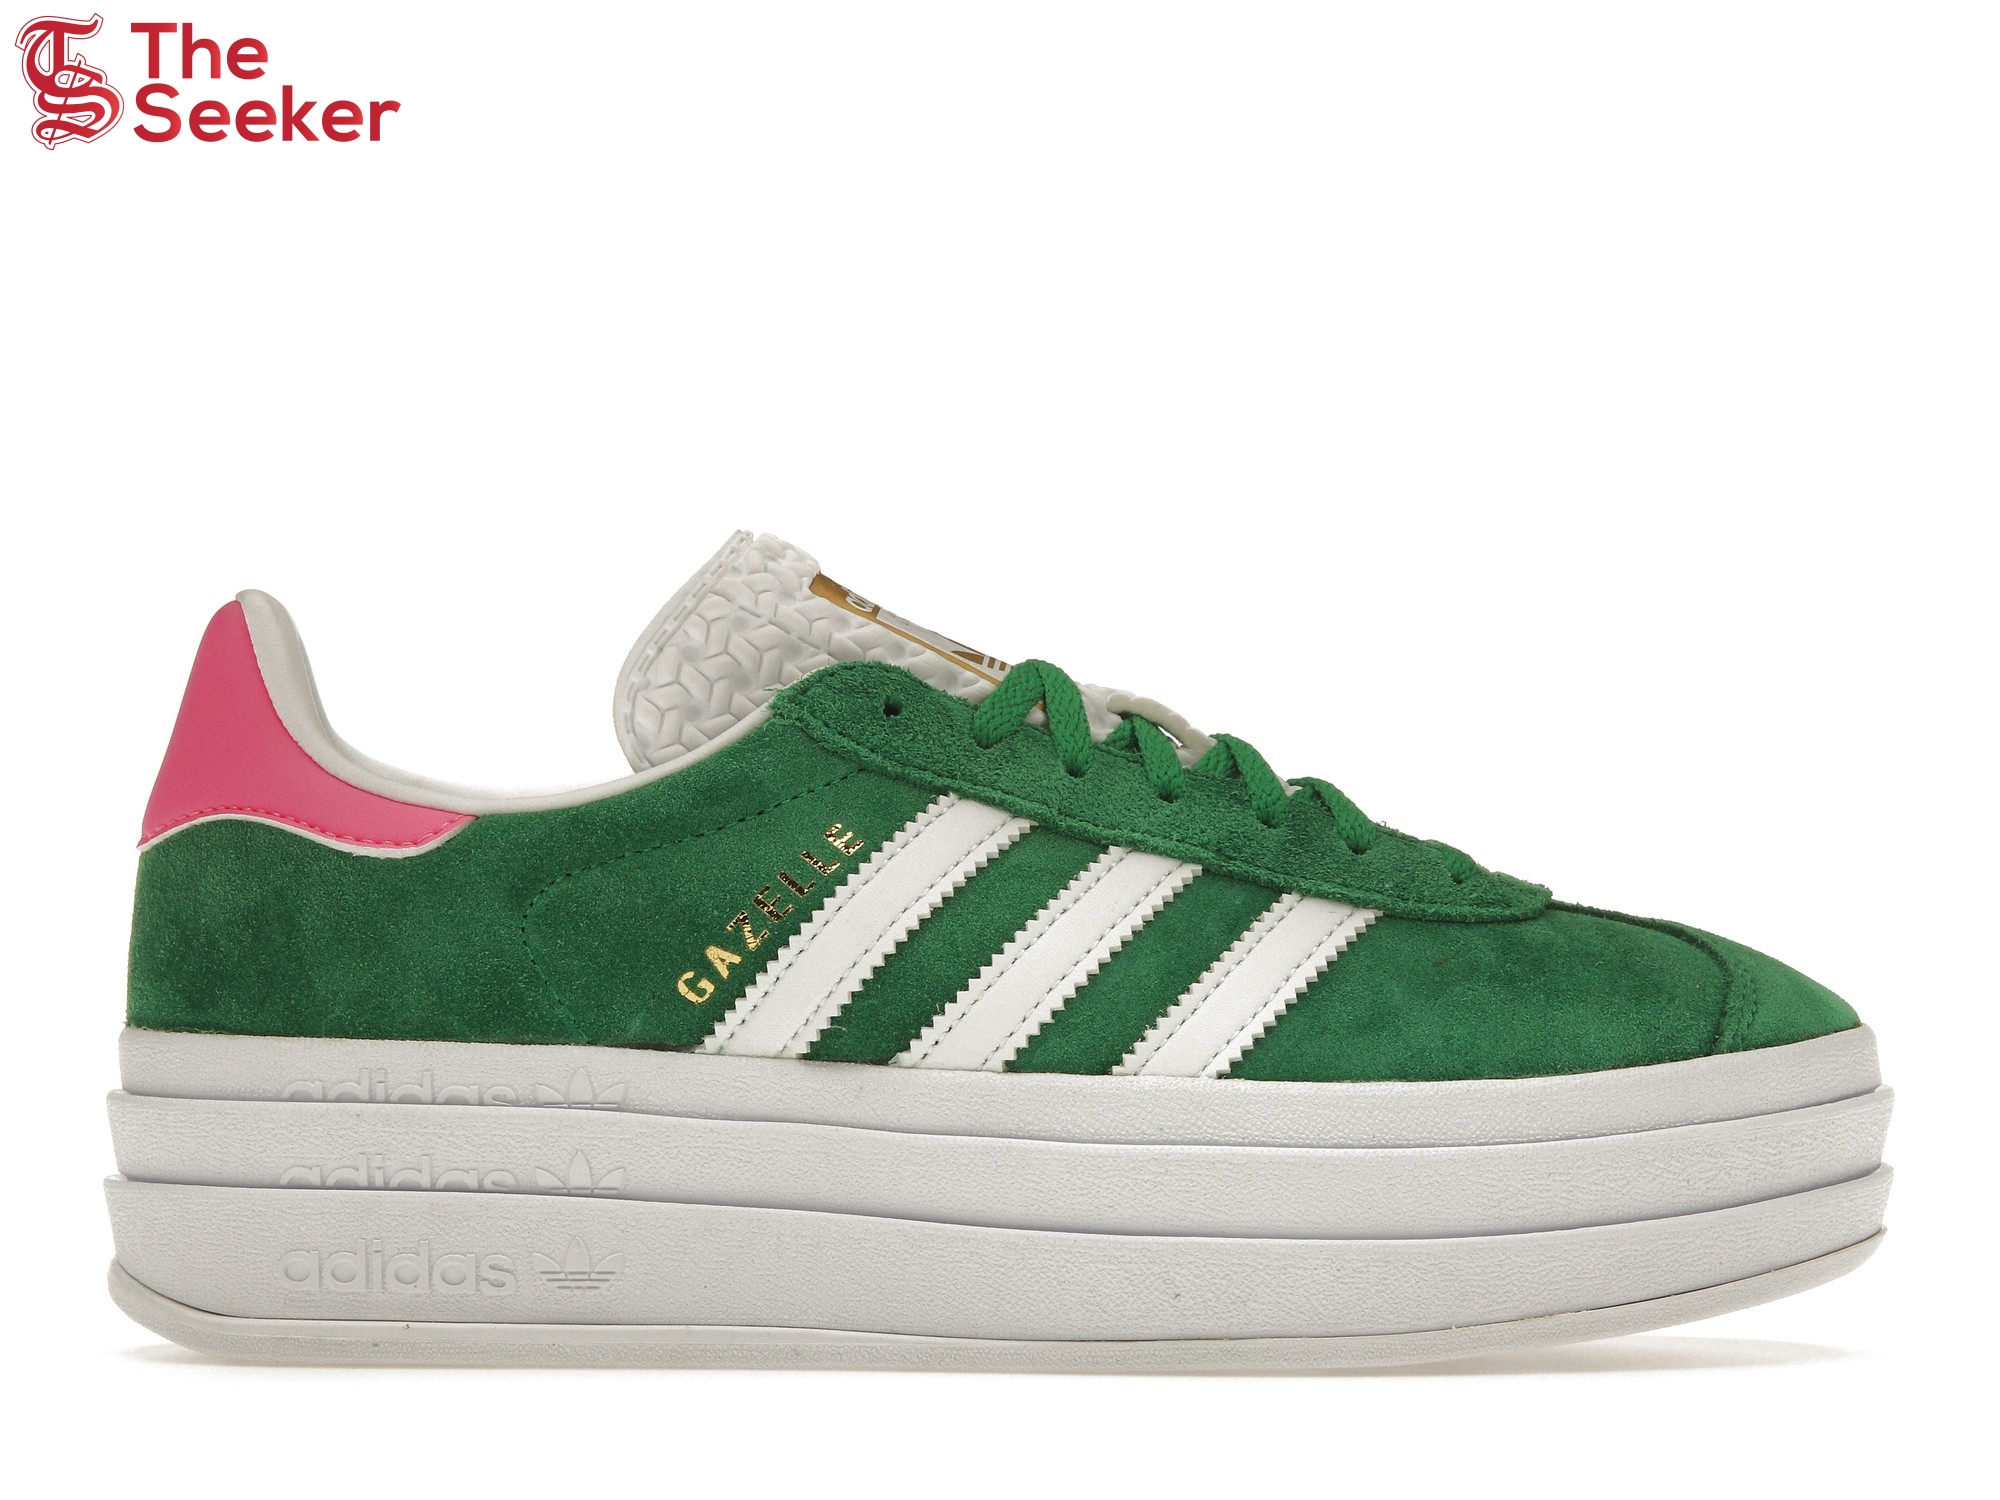 adidas Gazelle Bold Green Lucid Pink (Women's)